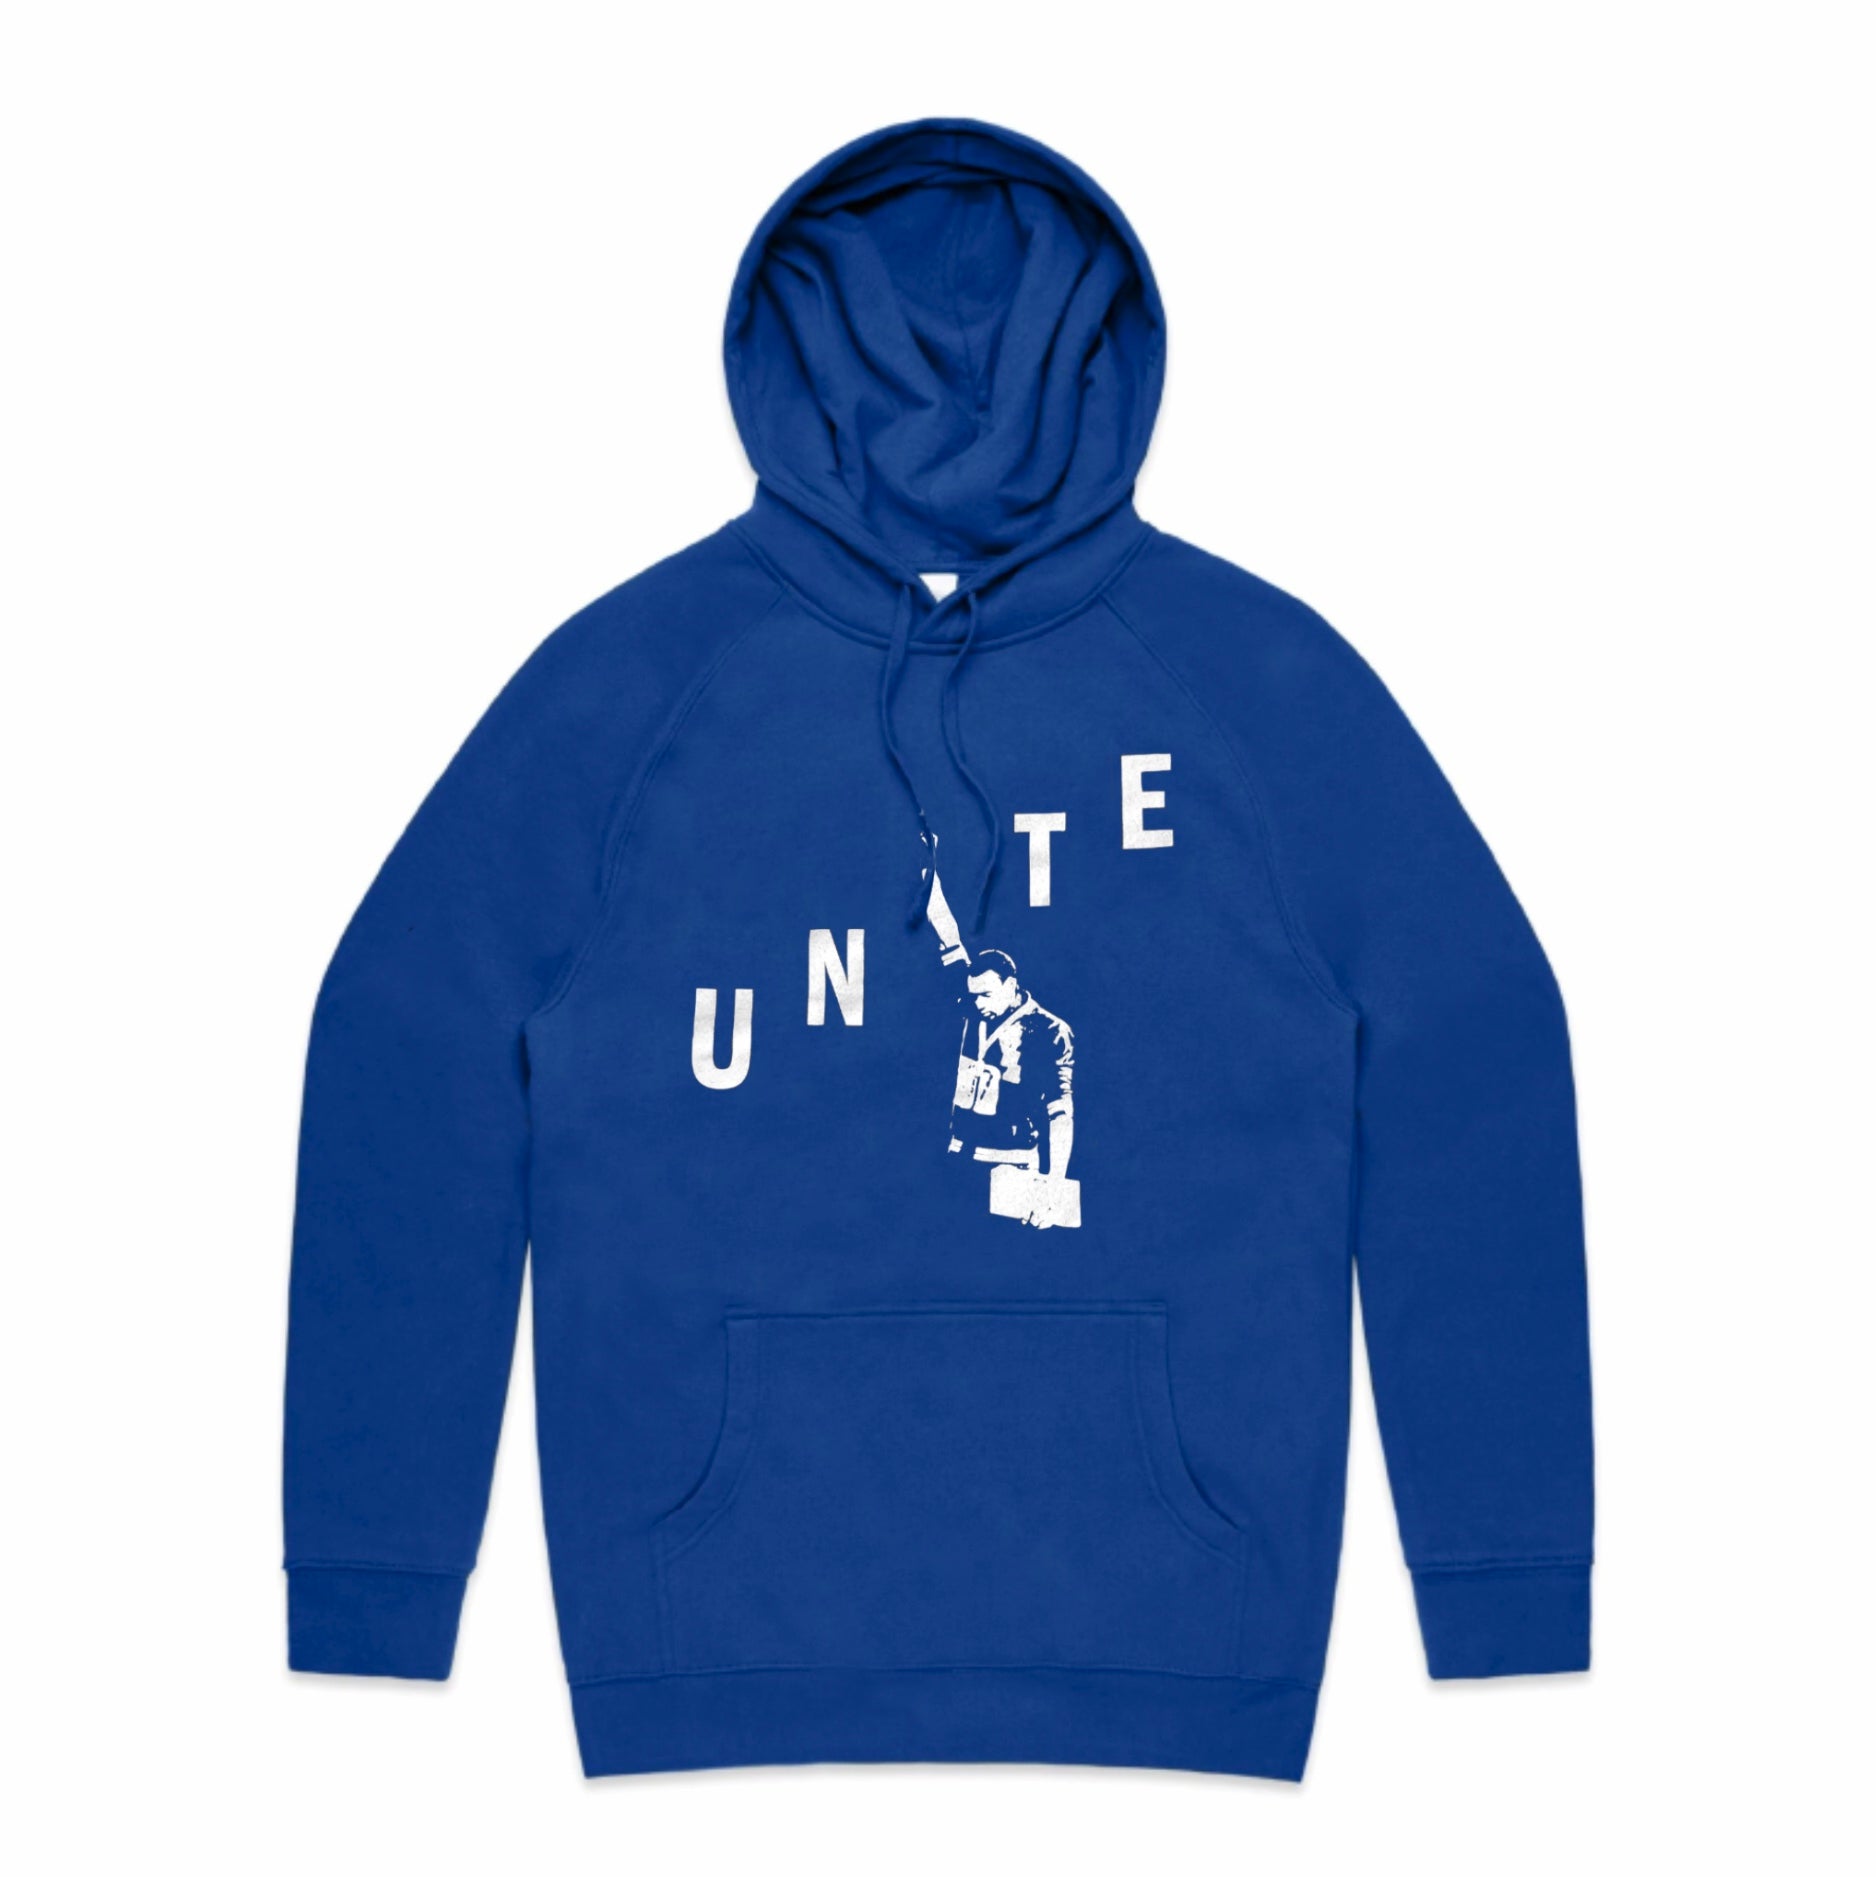 Unite Hoodie - Blue